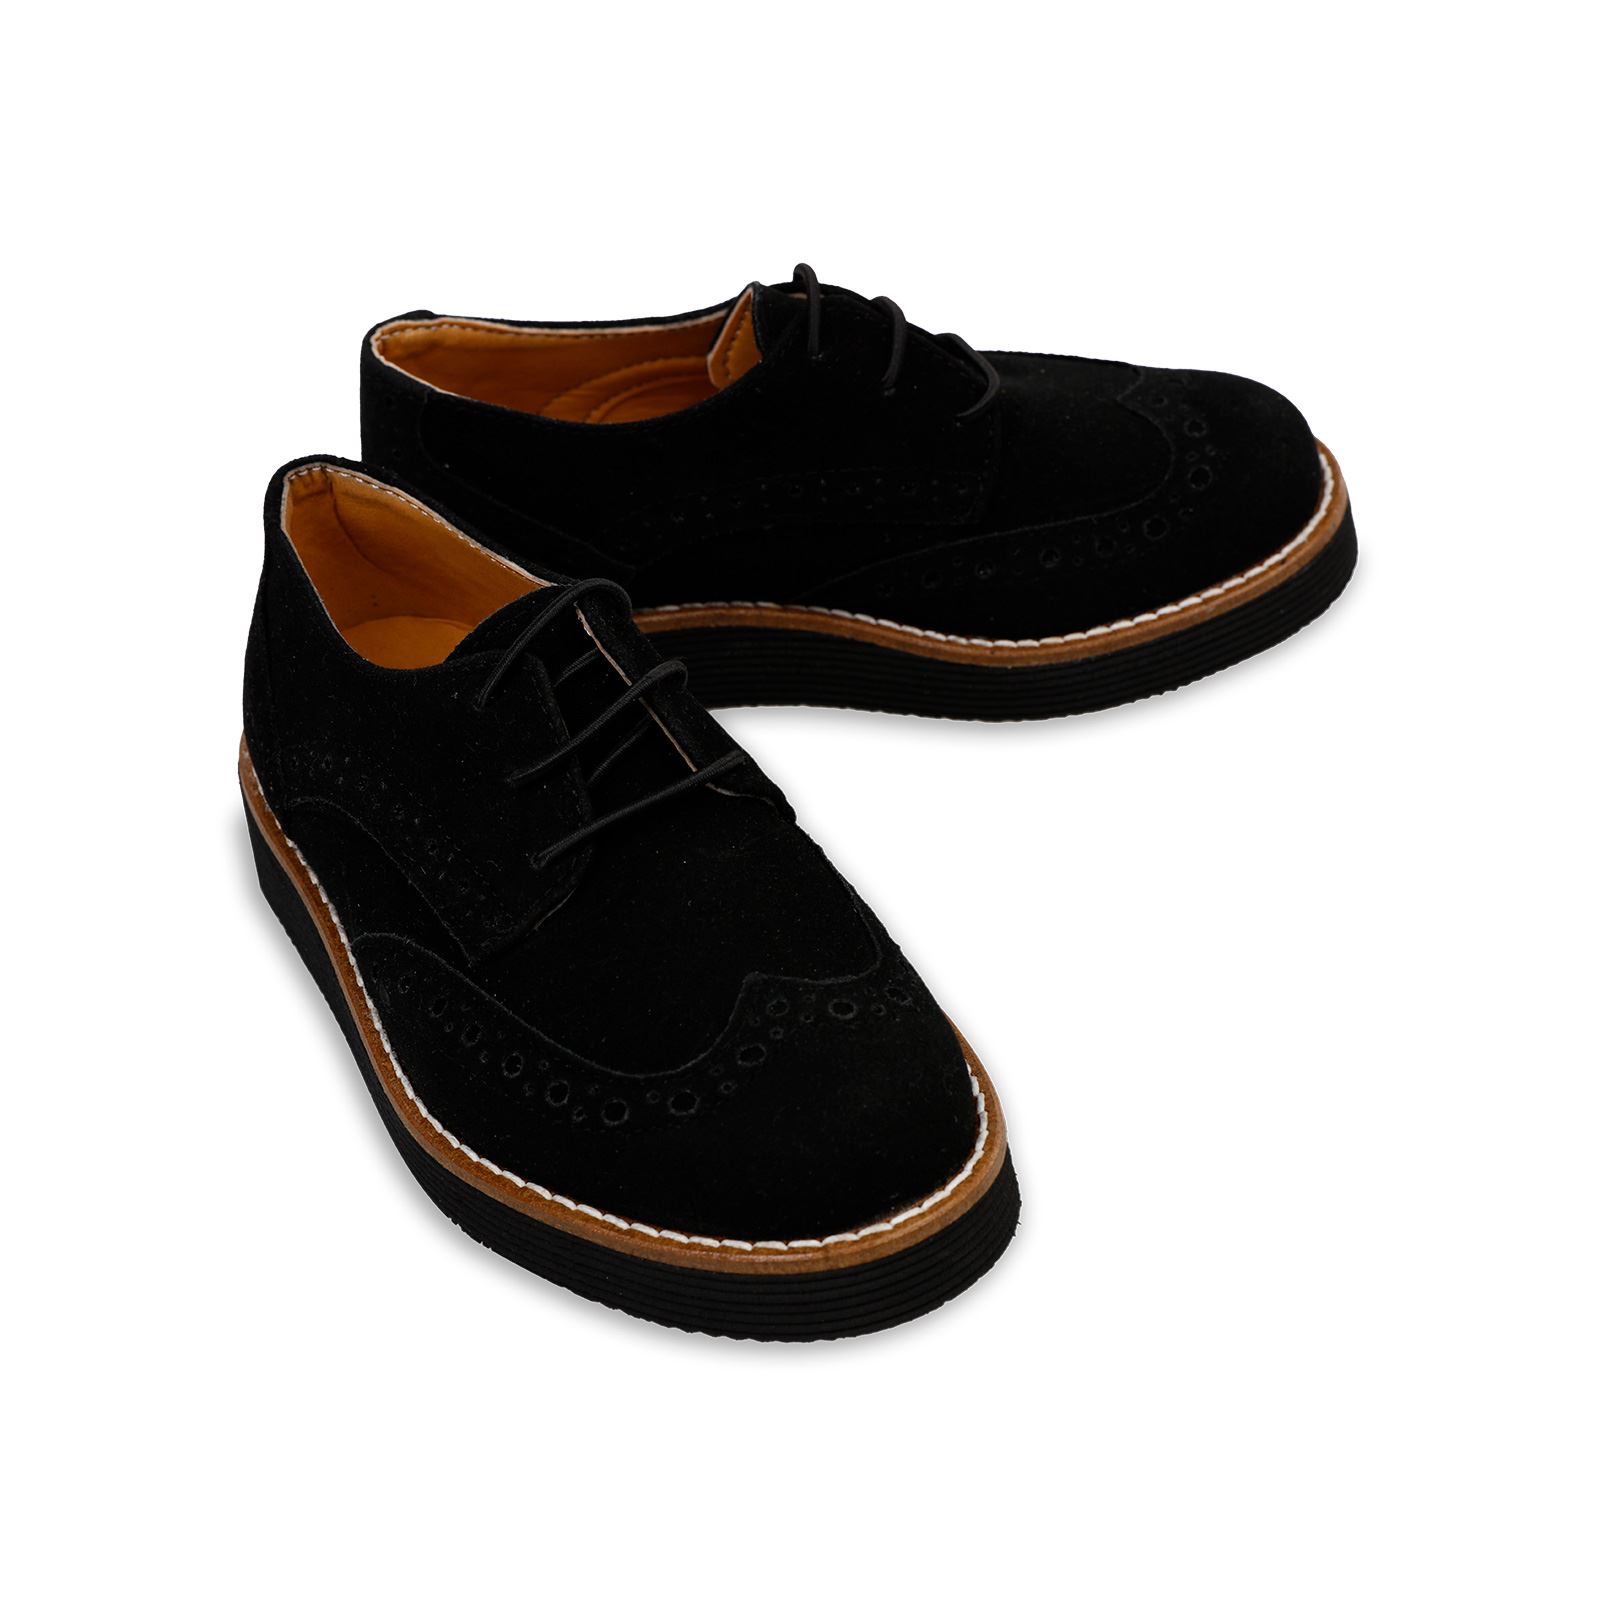 Harli Erkek Çocuk Klasik Ayakkabı 26-30 Numara  Siyah